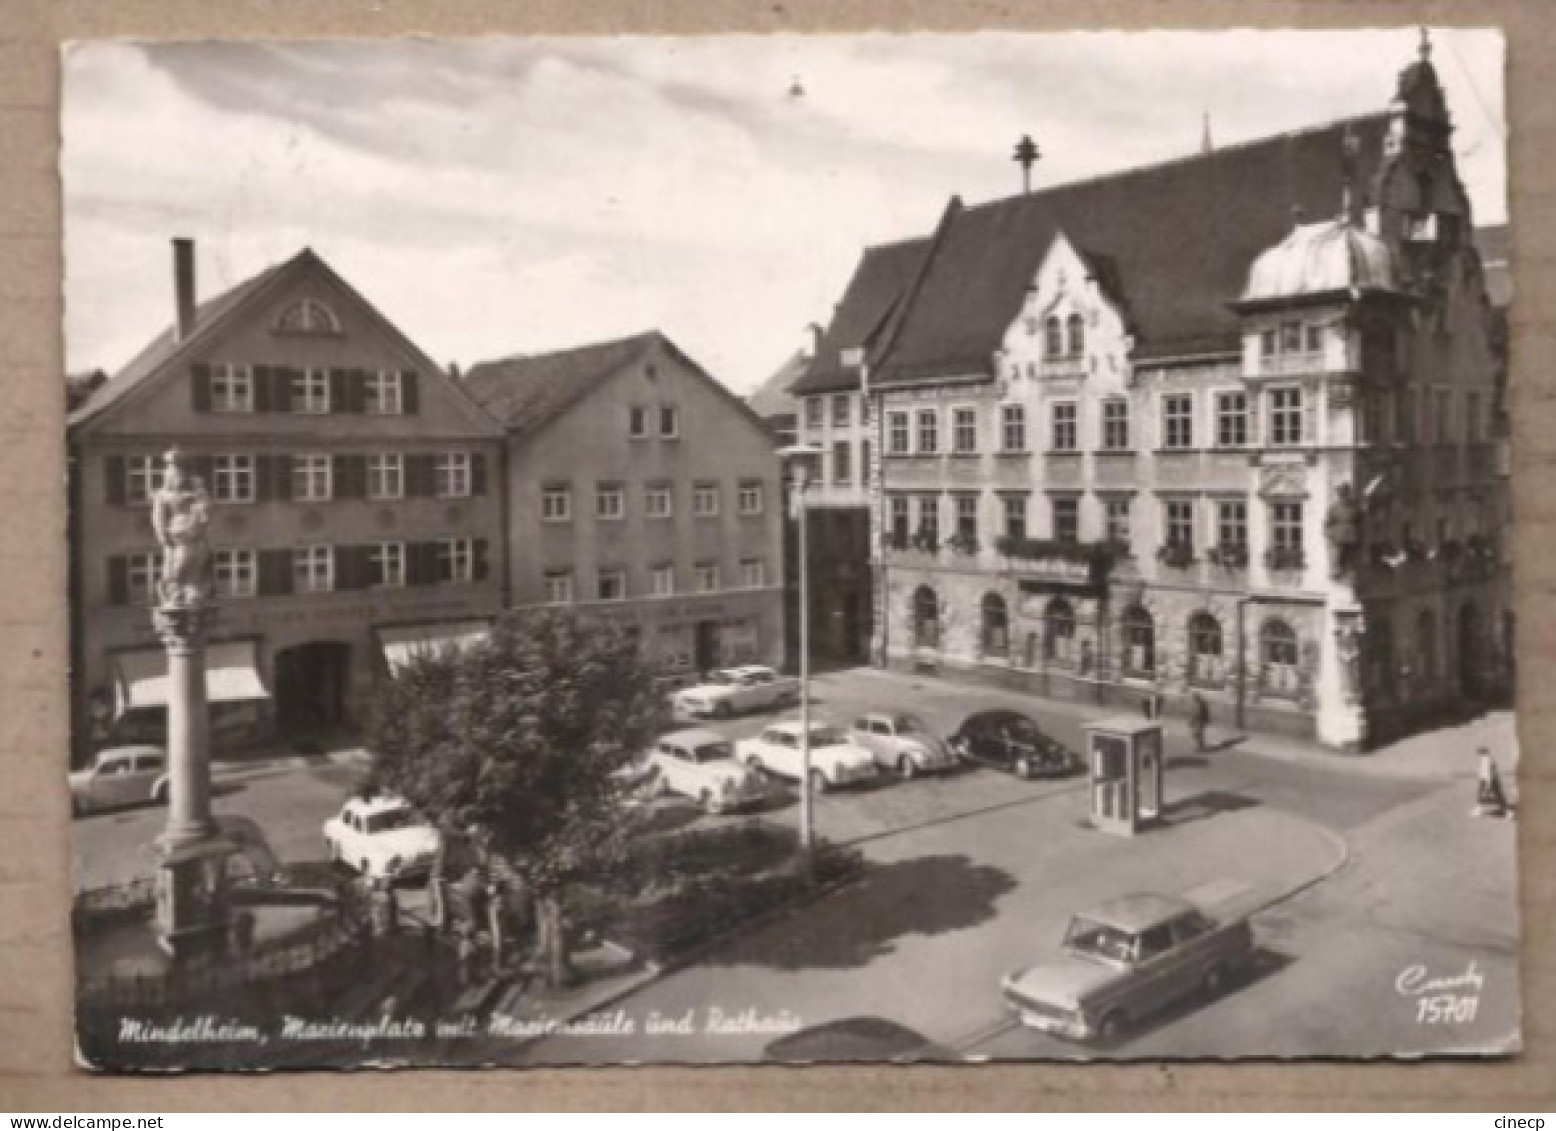 CPSM ALLEMAGNE - MINDELHEIM - Marienplatz Mit Mariensäule Und Rathaus - PLACE CENTRE ANIMATION TB AUTOMOBILES - Mindelheim